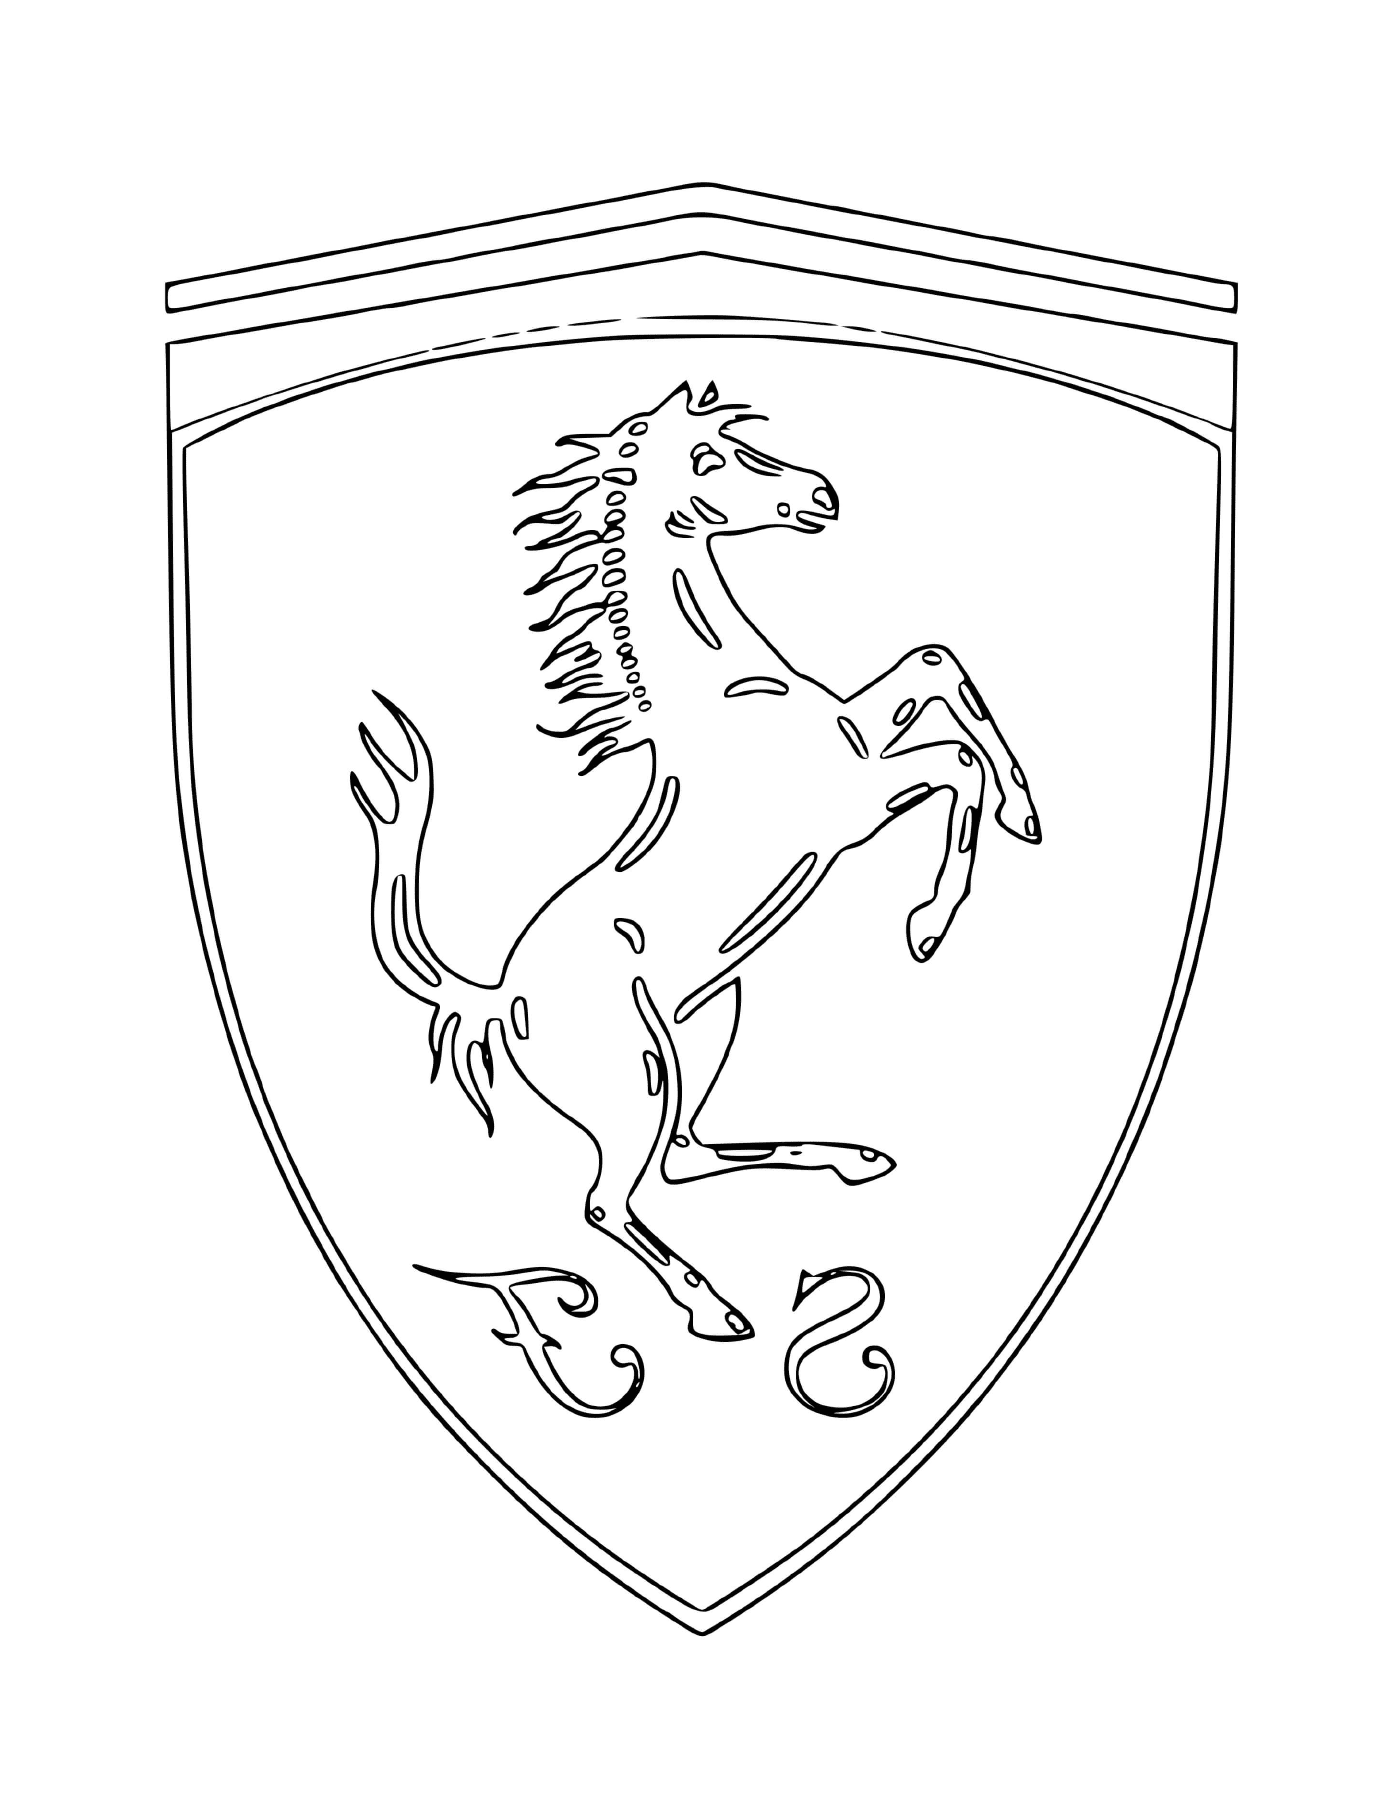  O logotipo do carro Ferrari com um cavalo 